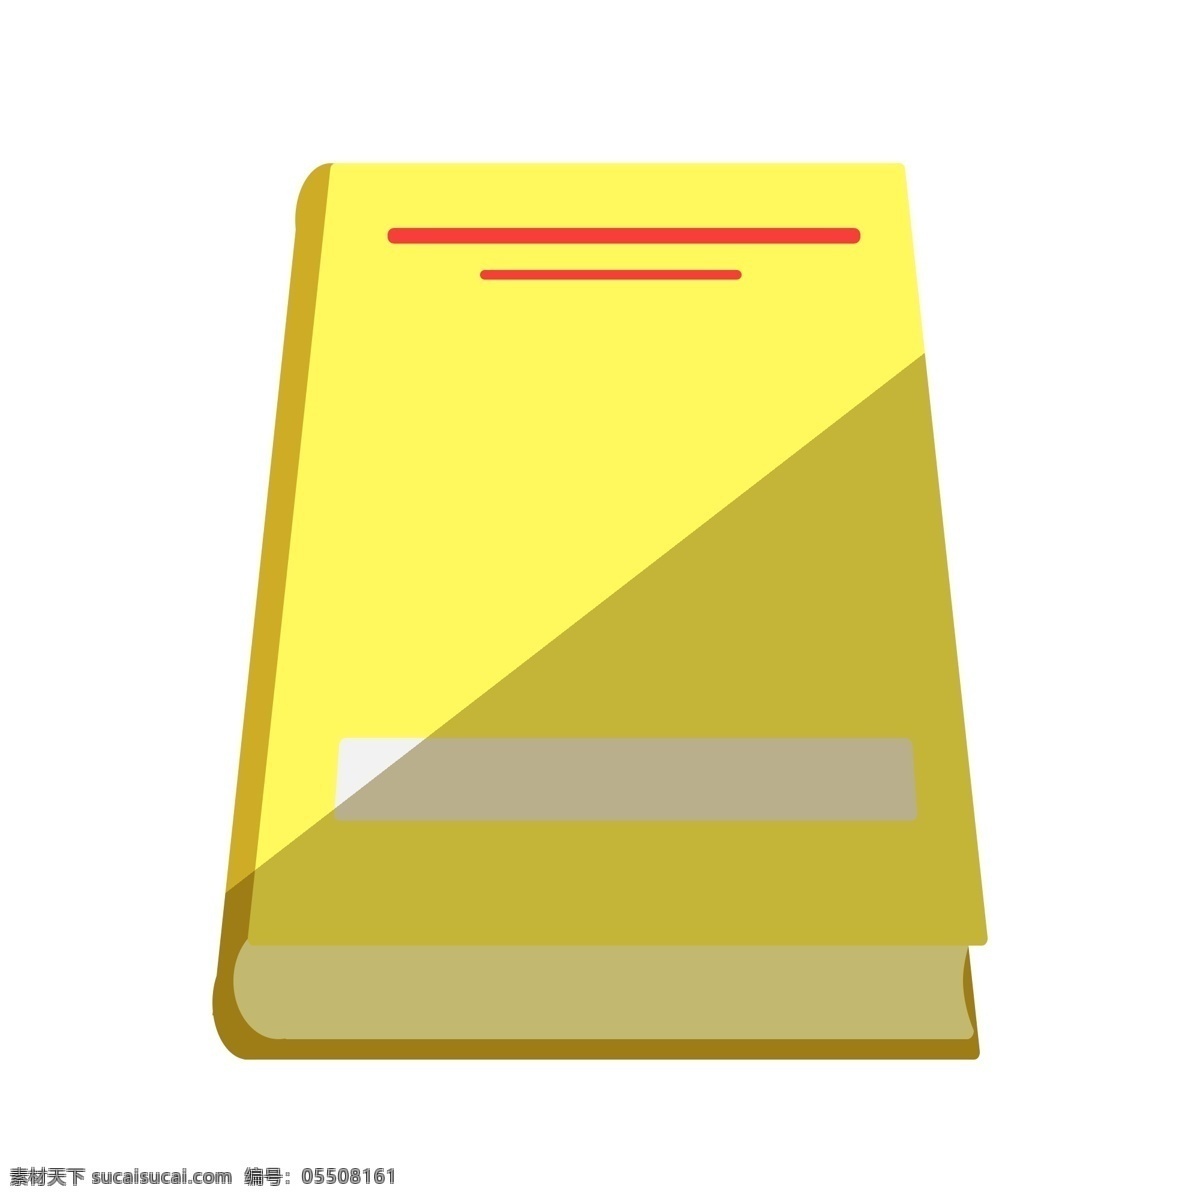 一本 黄色 封皮 书籍 黄色封皮 一本书 黄色封皮书籍 黄色书籍 教科书 书本插图 书籍插画